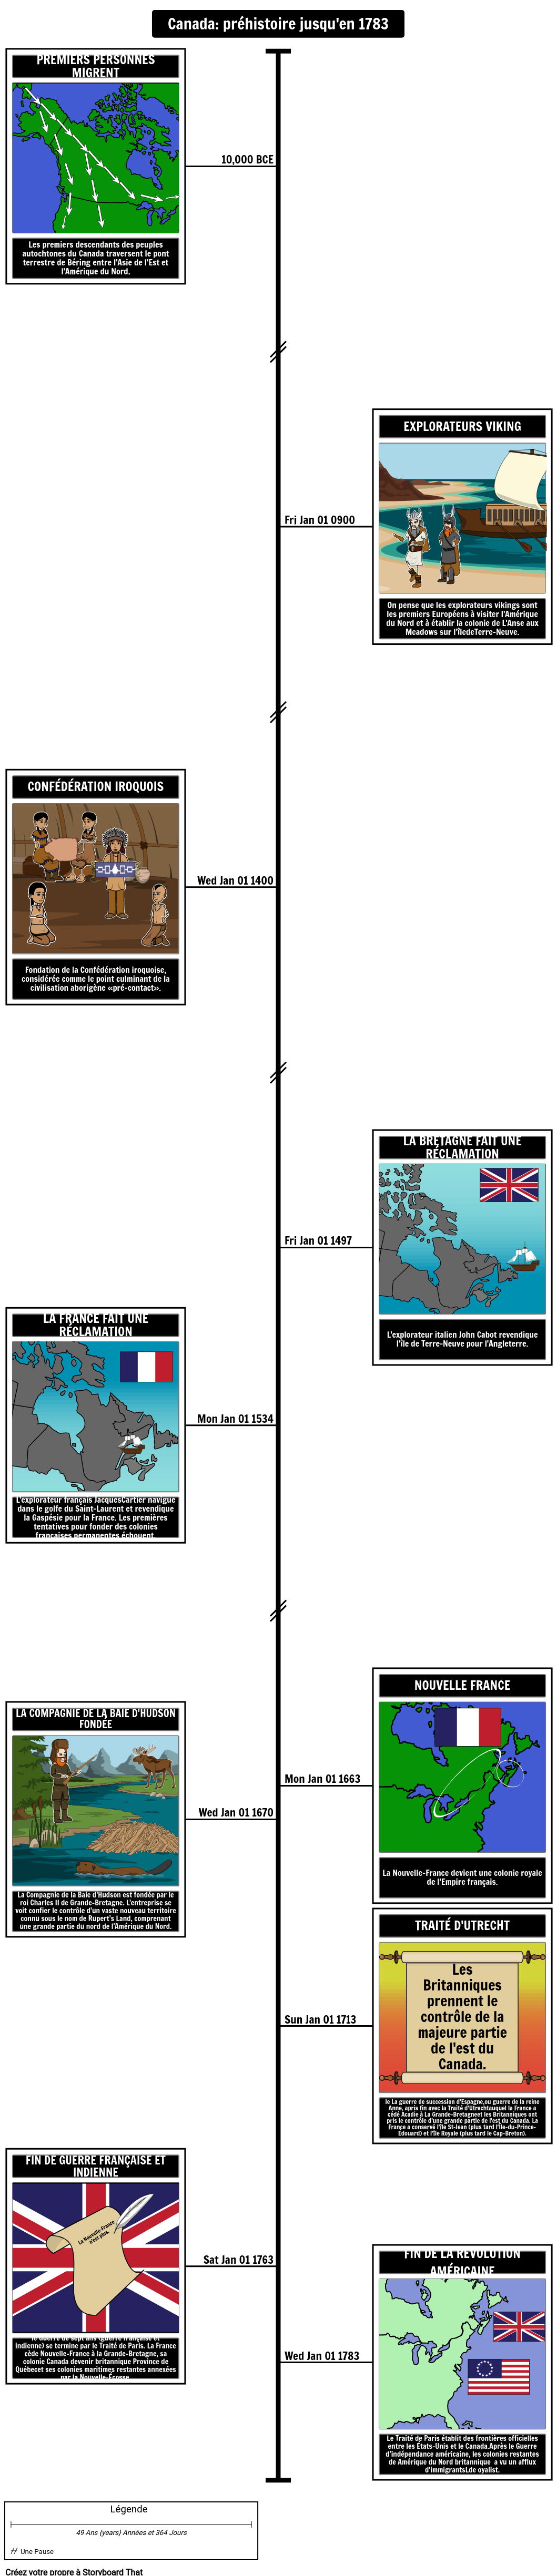 Chronologie de l'histoire canadienne de la préhistoire à 1783